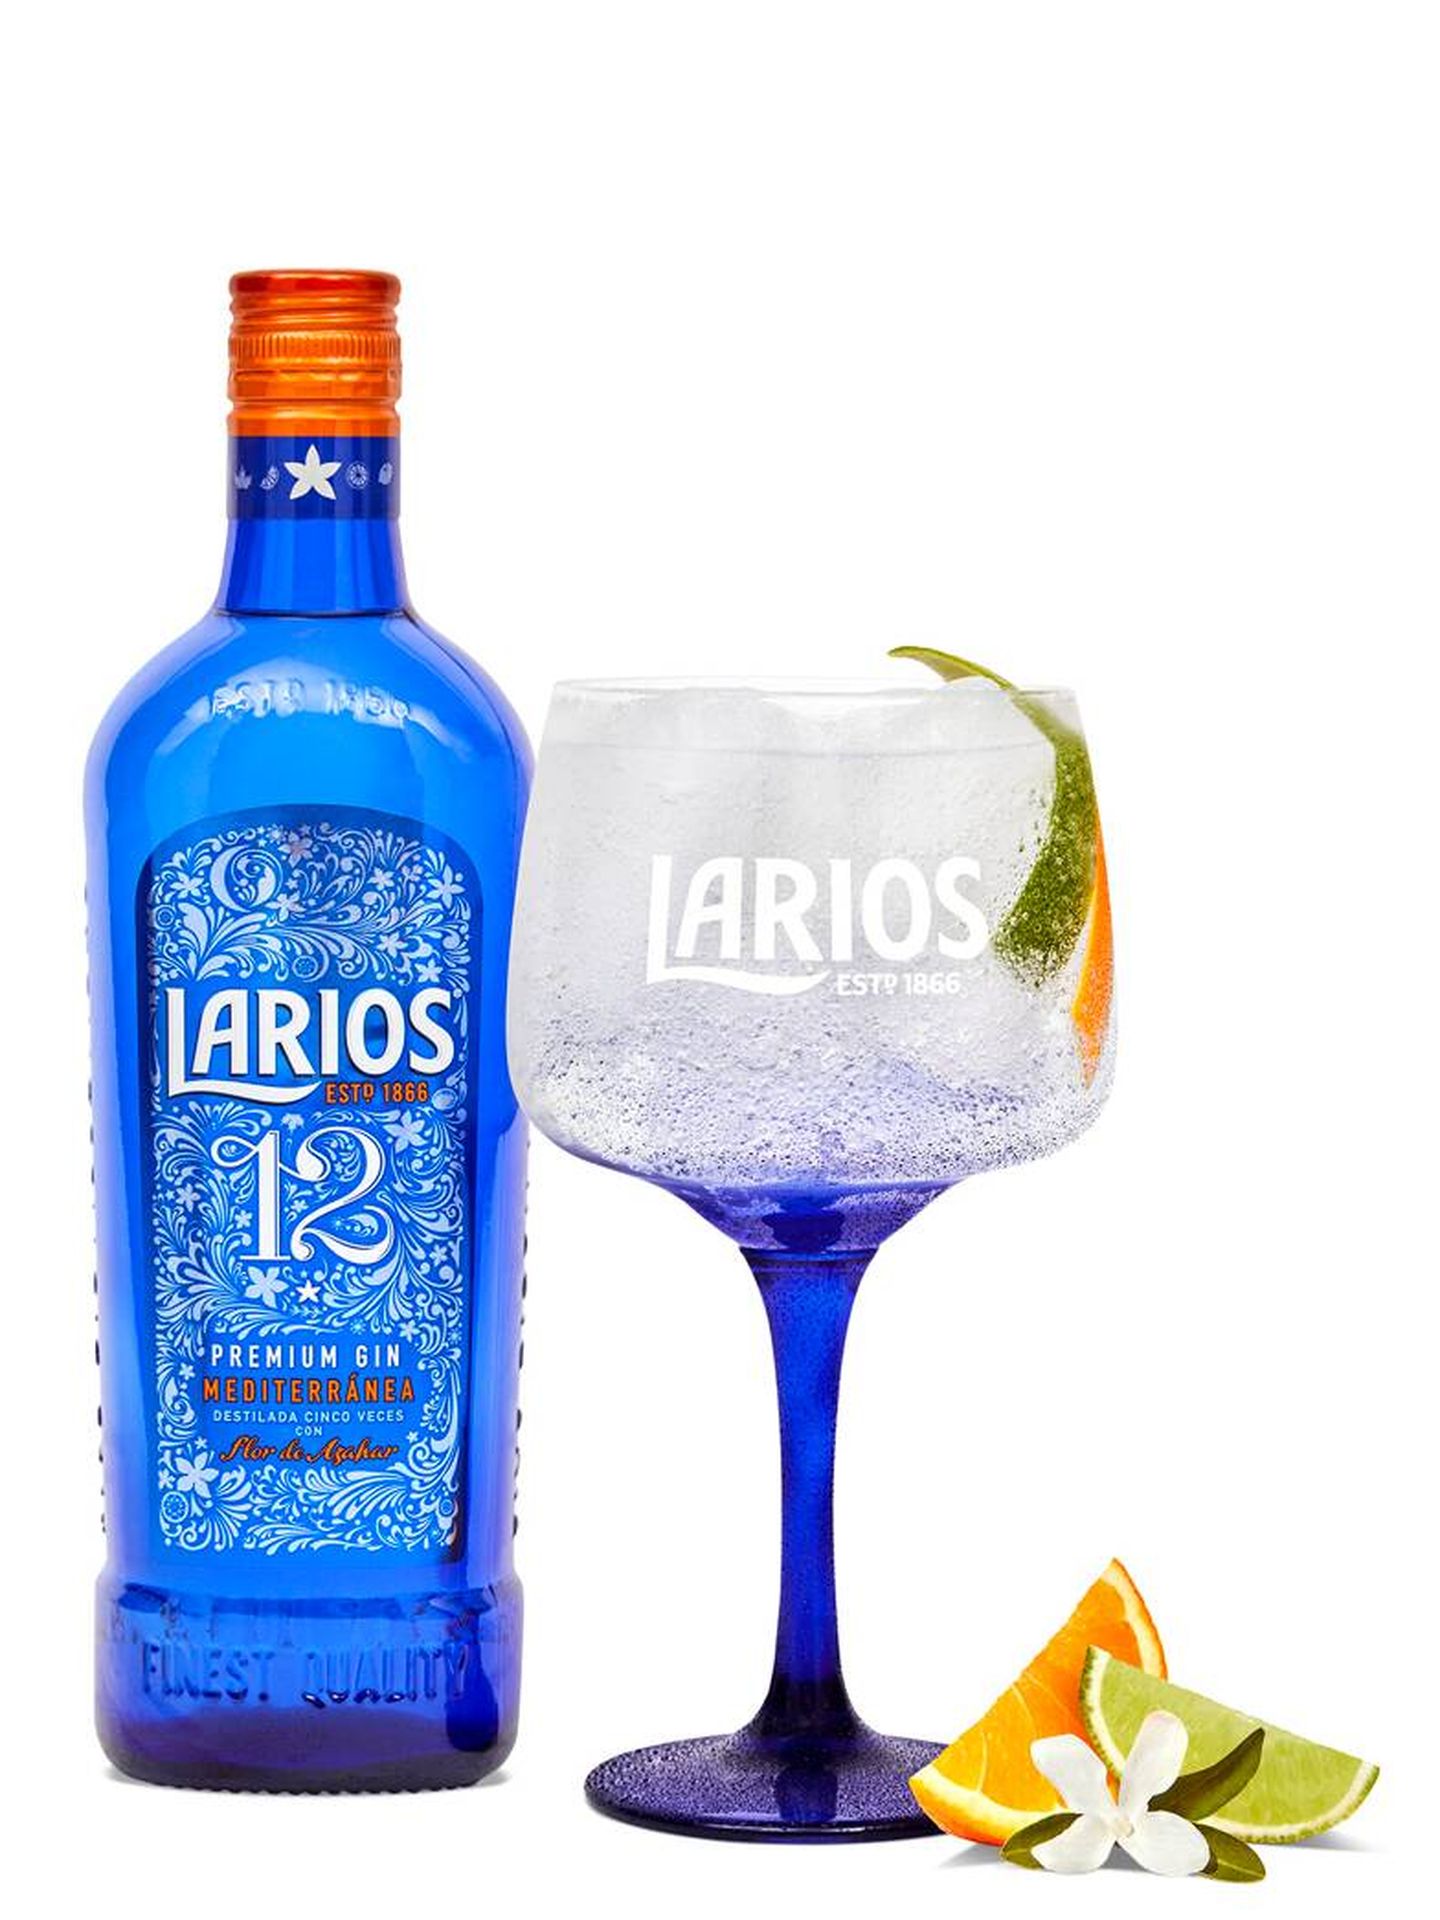 Larios 12 Premium Gin. (Cortesía)